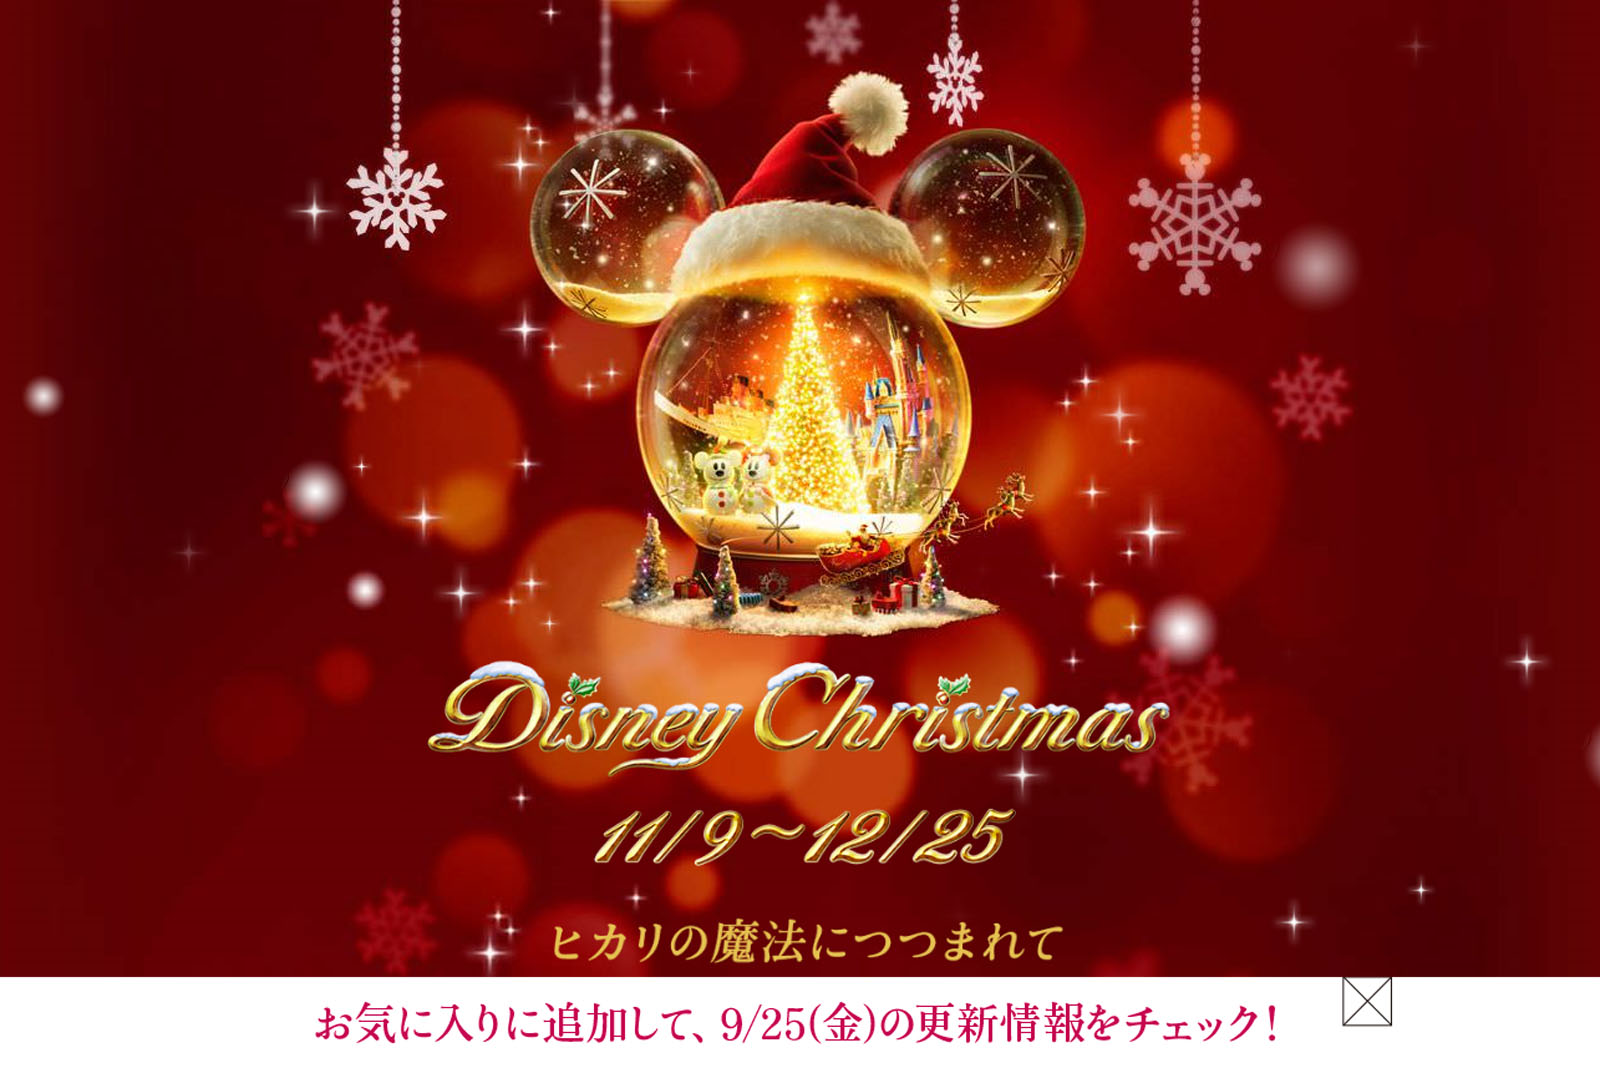 Tdr ディズニー クリスマス ティザーサイトが登場 新情報は9月25日公開 Disney Colors Blog